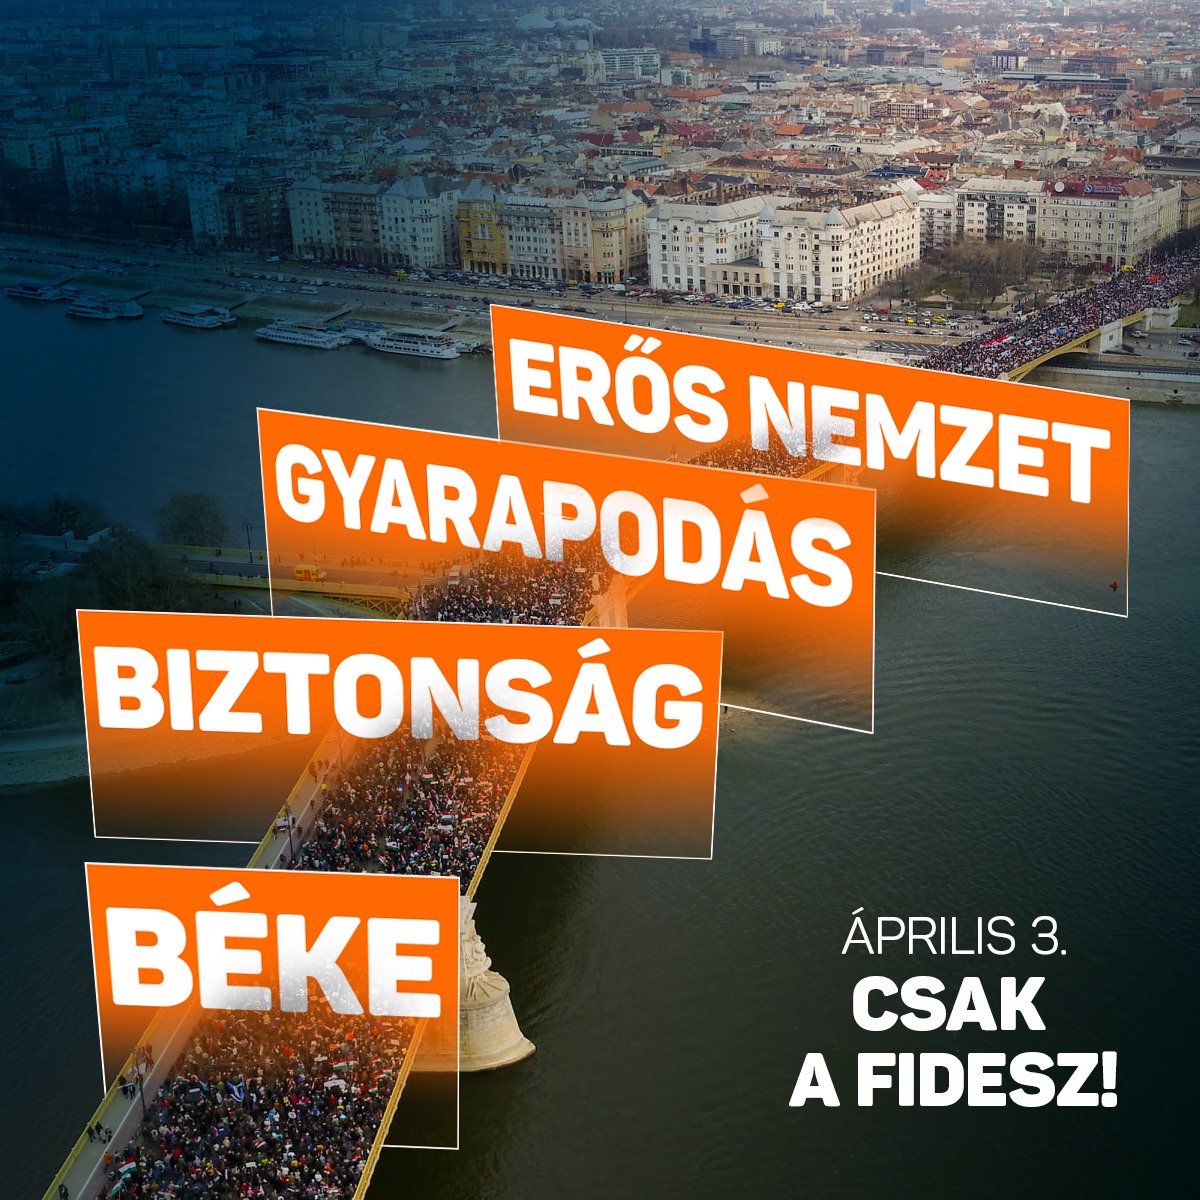 Béke, biztonság, gyarapodás, erős nemzet. Április 3. ﻿﻿﻿﻿Csak a Fidesz!